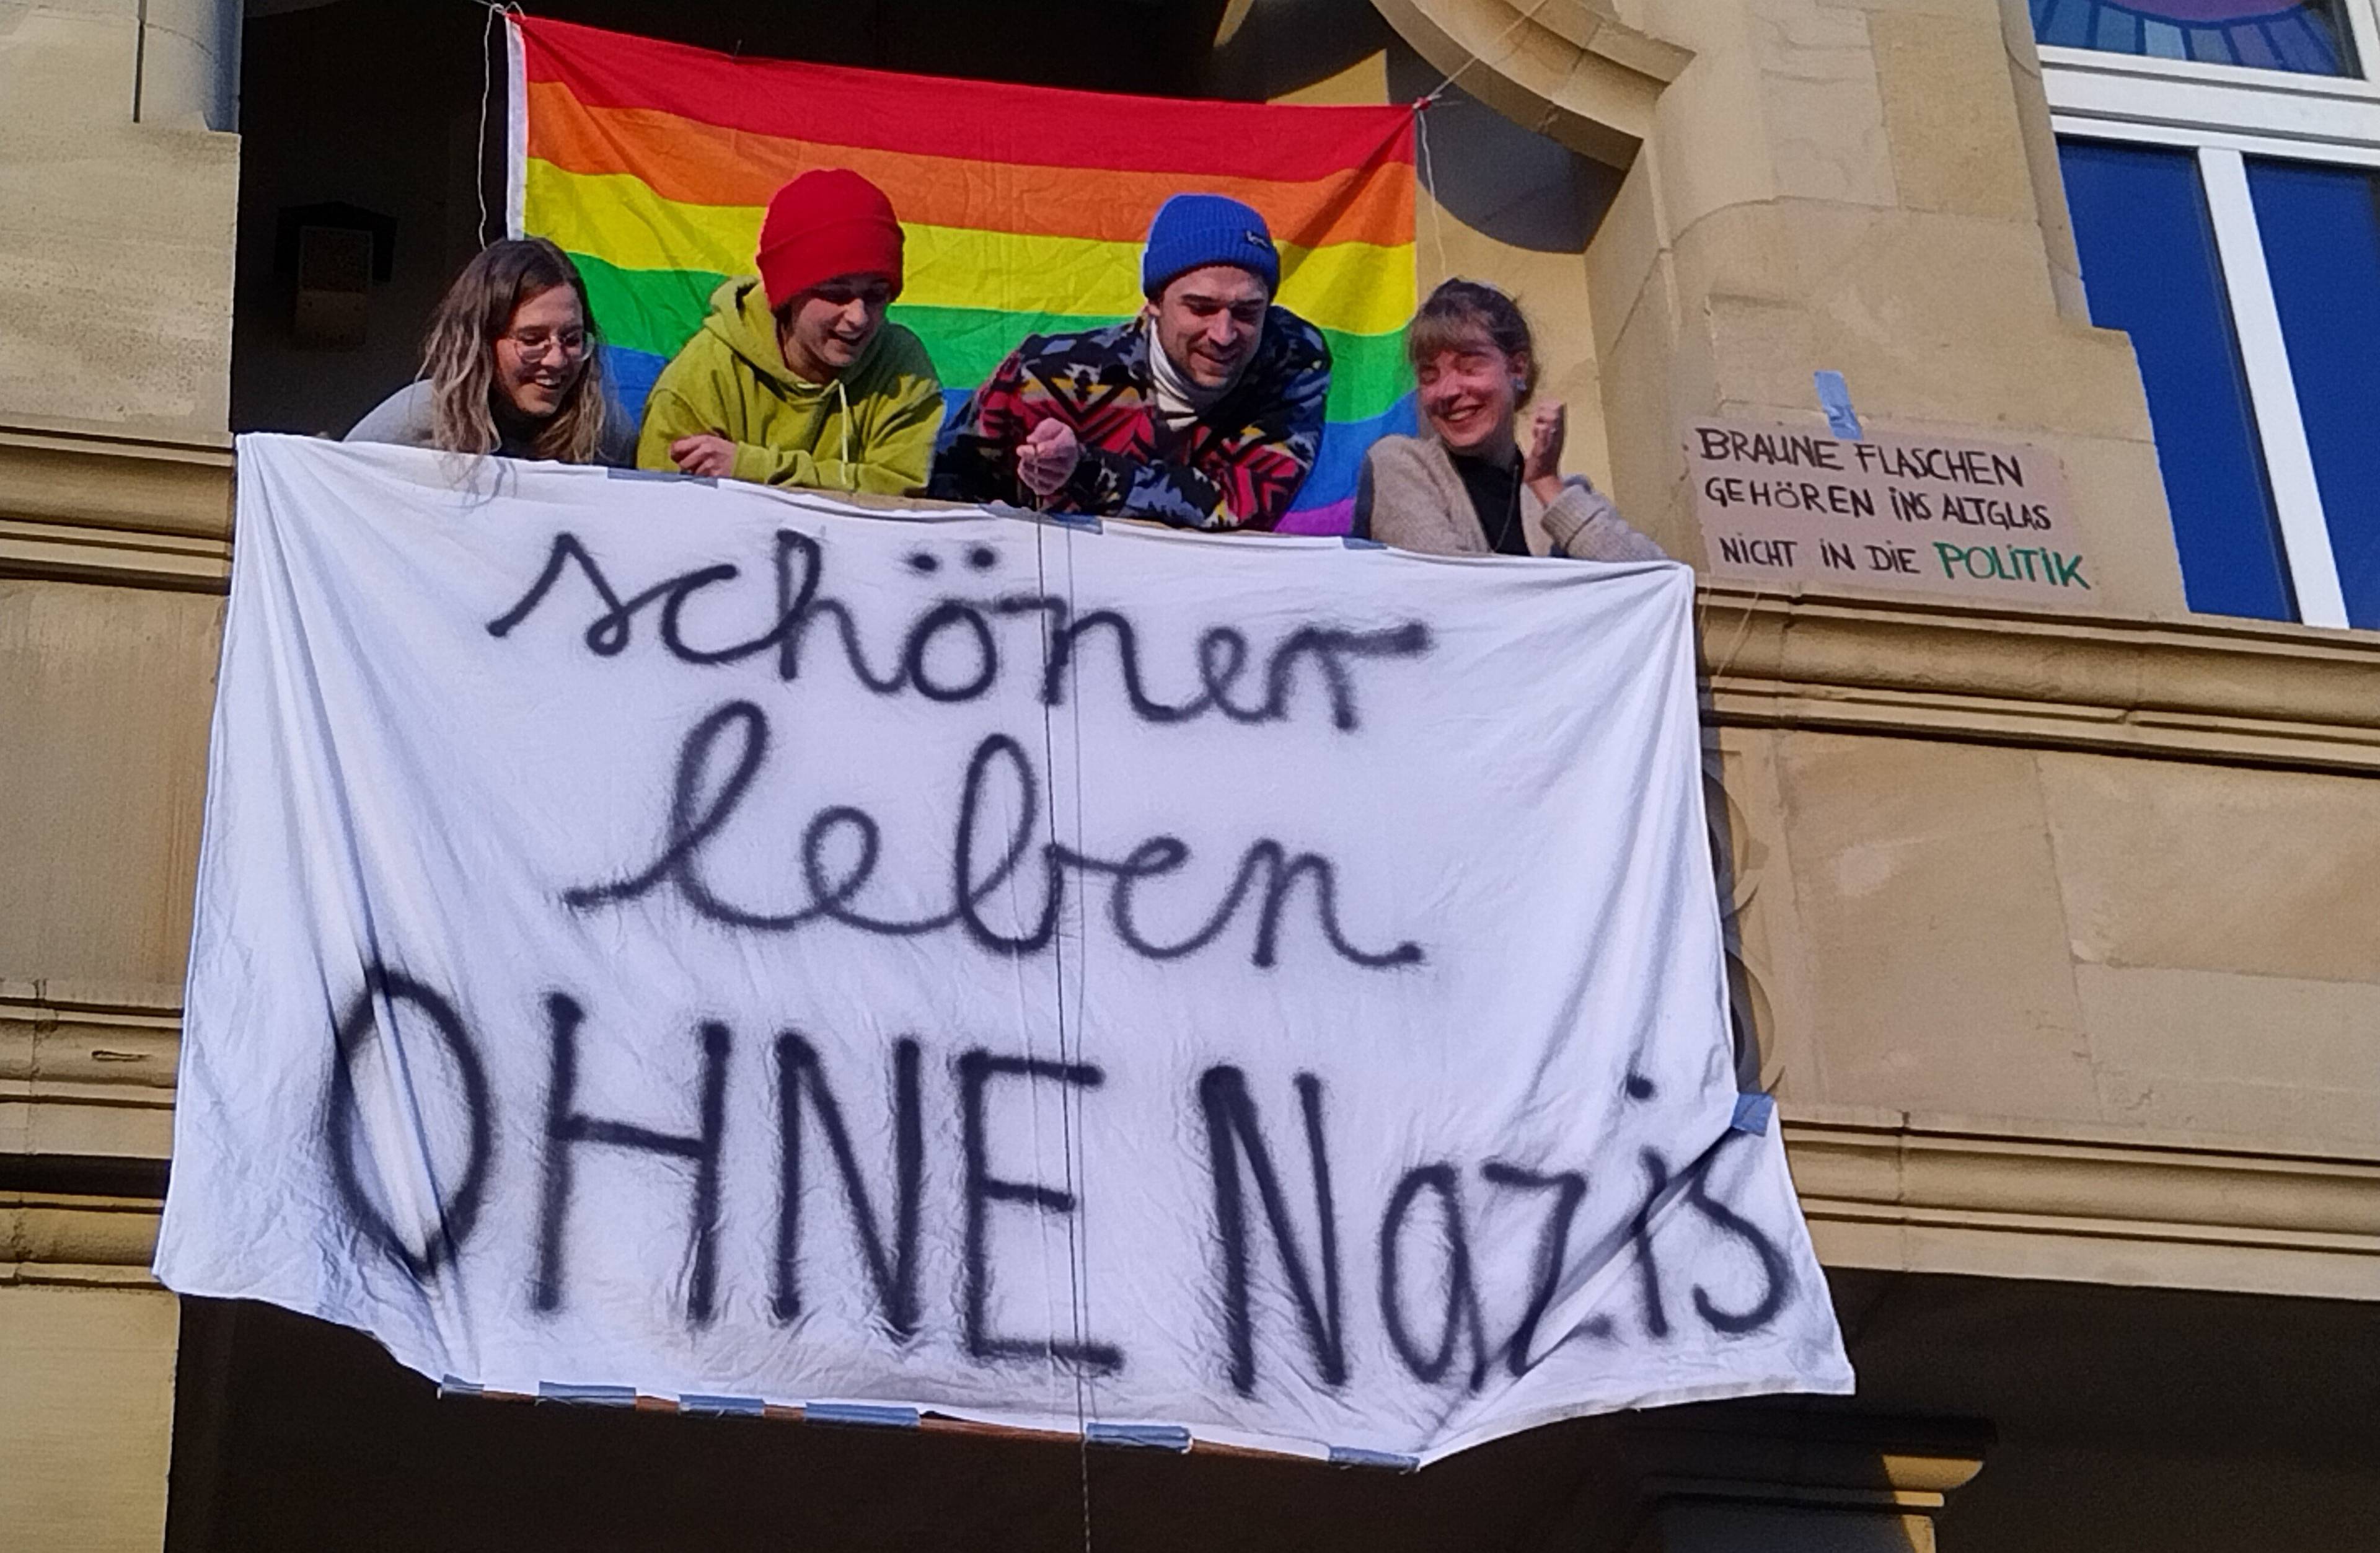 uśmiechnięci młodzi ludzie wychylają sie z balkonu i patrzą na wywieszone pod balkonem białe płótno z napisem po niemiecku: "Lepiej żyć bez nazistów". Za nimi w oknie duża tęczowa flaga.